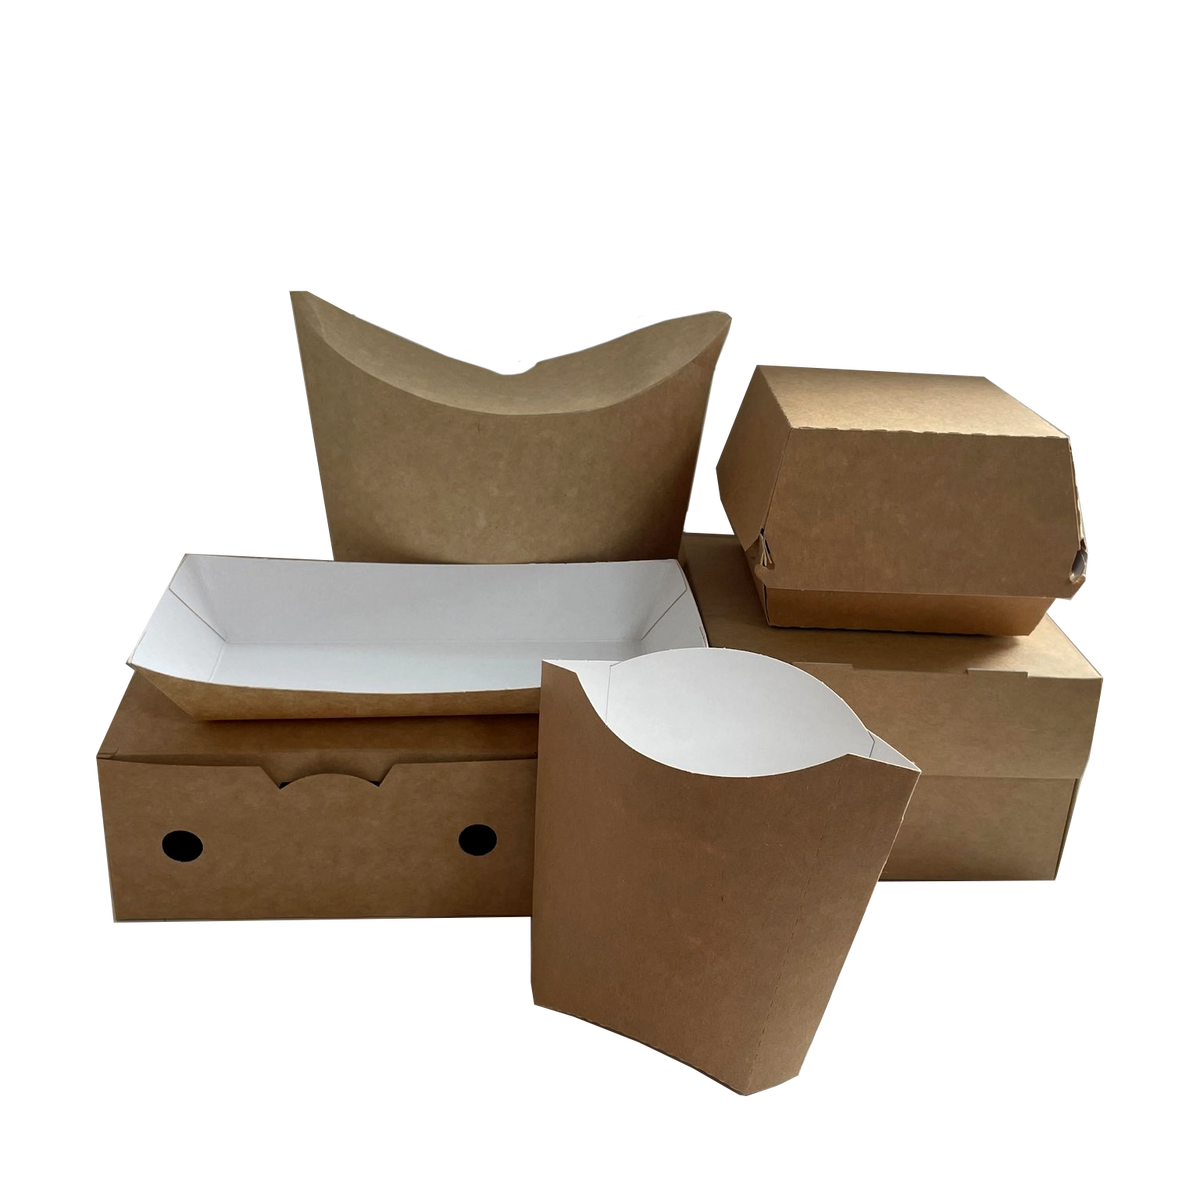 Формы и конструкции картонных коробок | полезный блог Packresource